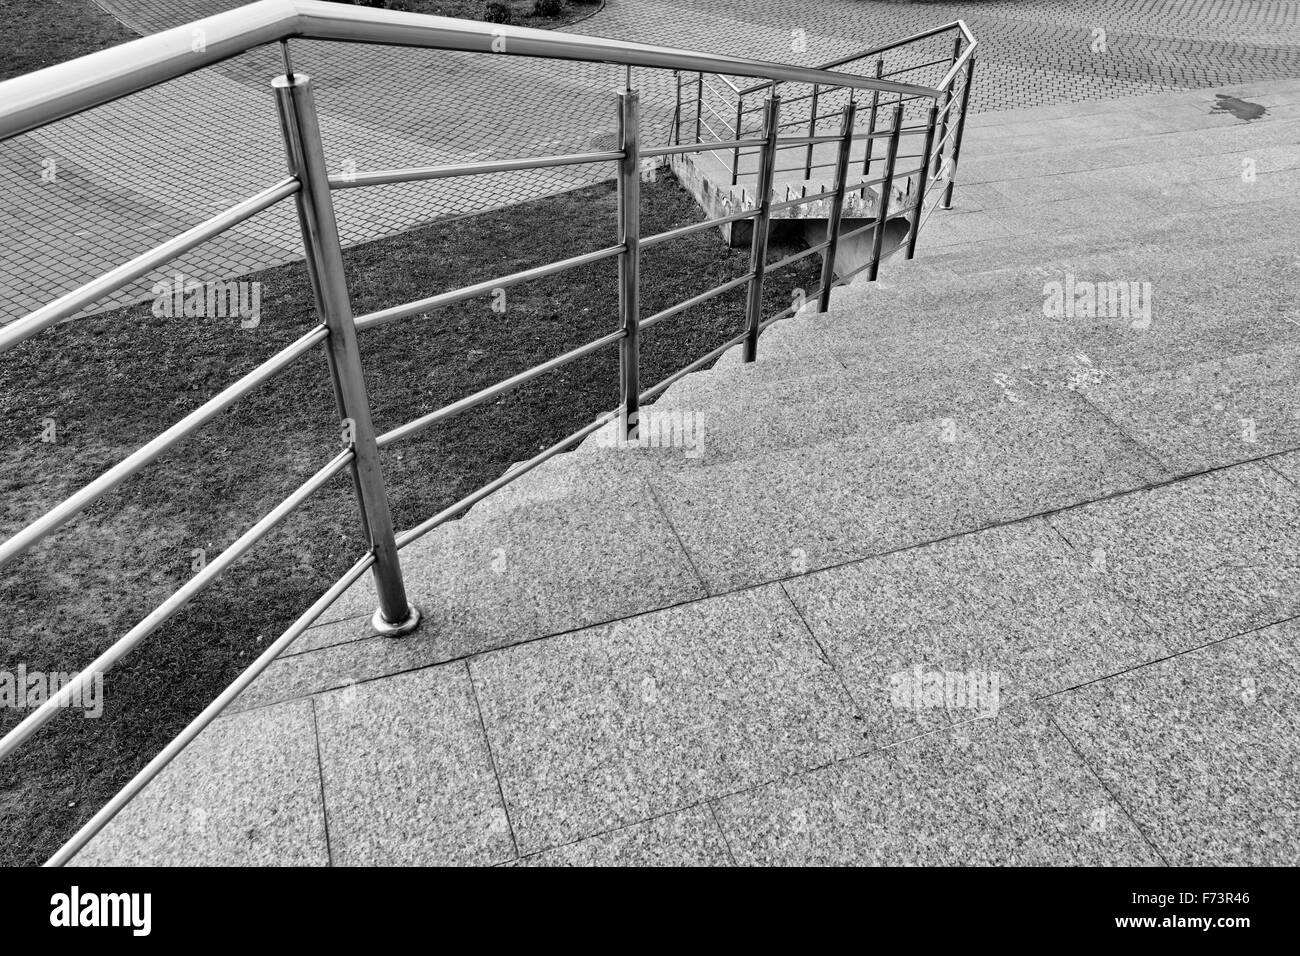 Escaliers dans la ville, regard artistique en noir et blanc. Banque D'Images